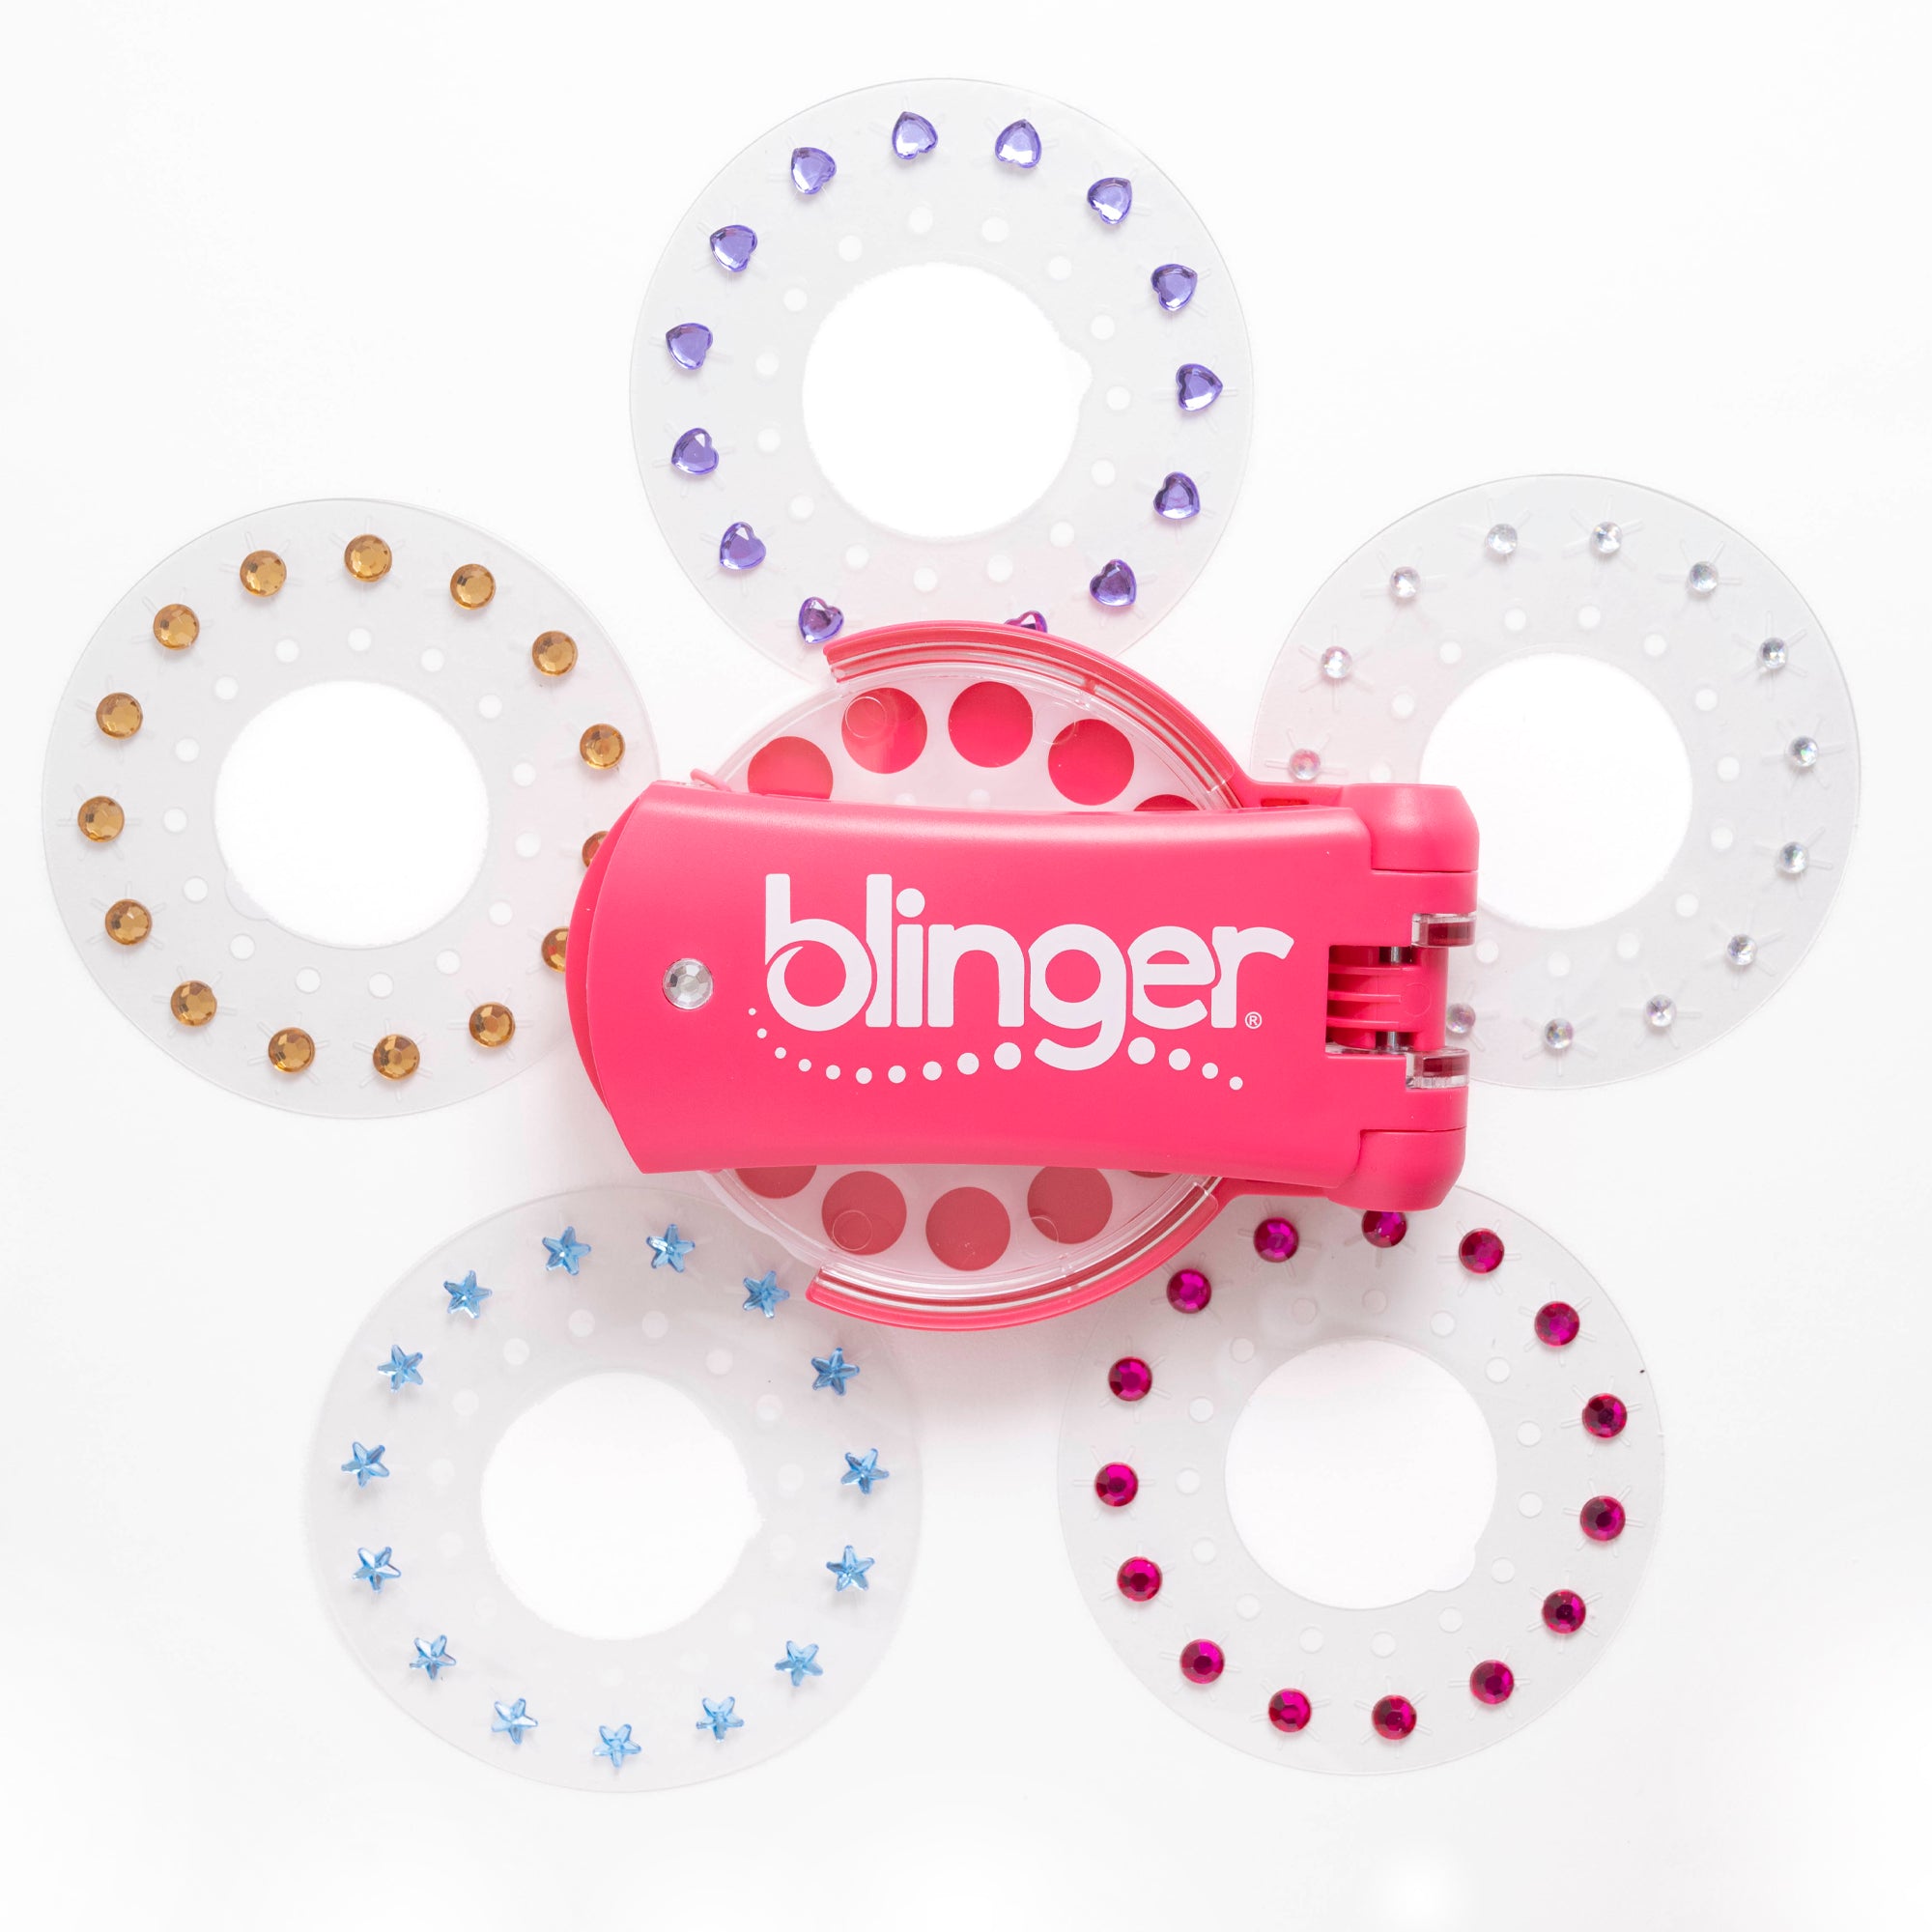 blinger® kids Dazzling Collection Starter Kit with blinger® Gem Stamper + 75 Colorful Gems